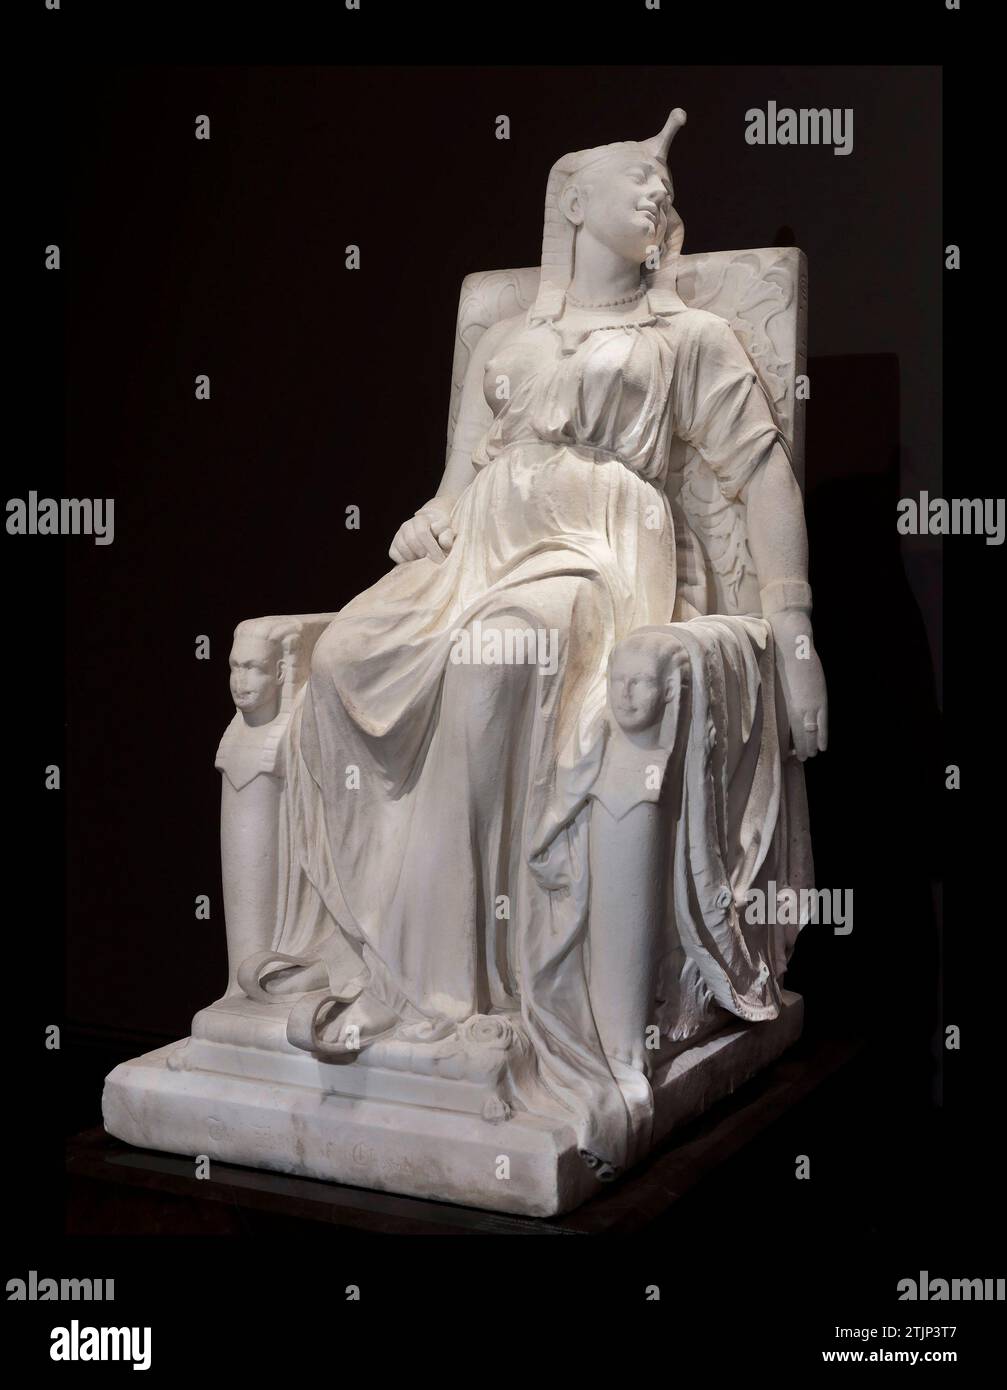 La Mort De Cléopâtre Par Le Sculpteur Edmonia Lewis Cléopâtre 69 30 Av J C La Reine 